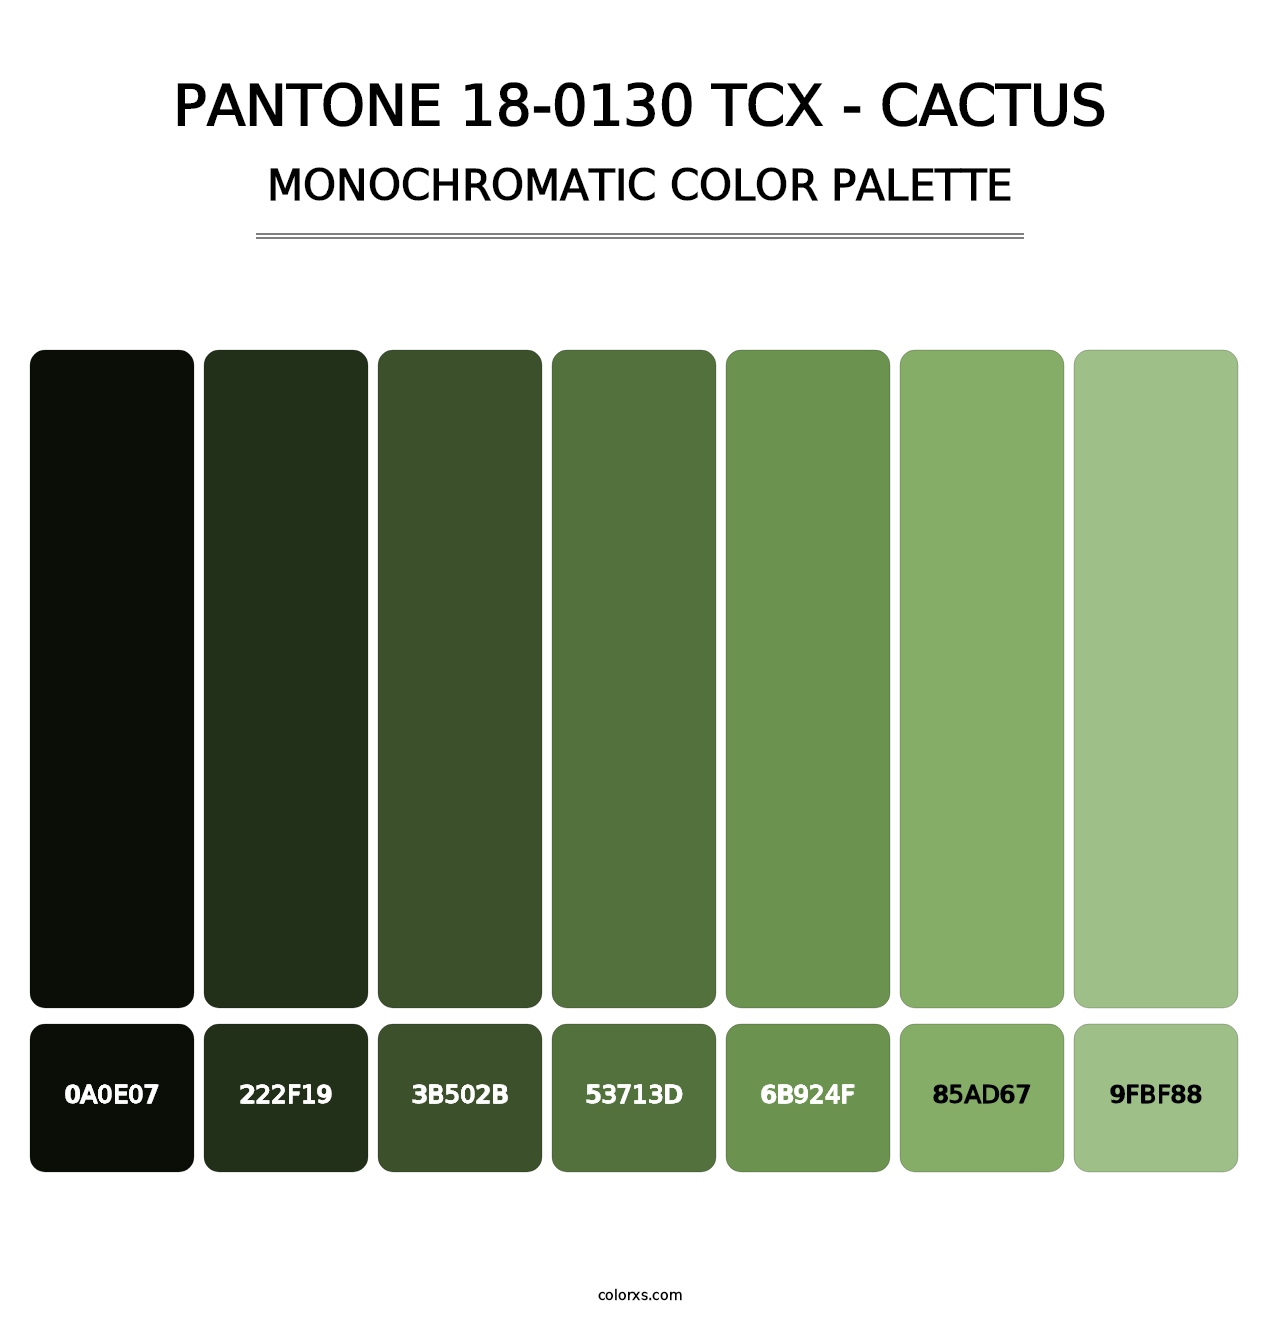 PANTONE 18-0130 TCX - Cactus - Monochromatic Color Palette